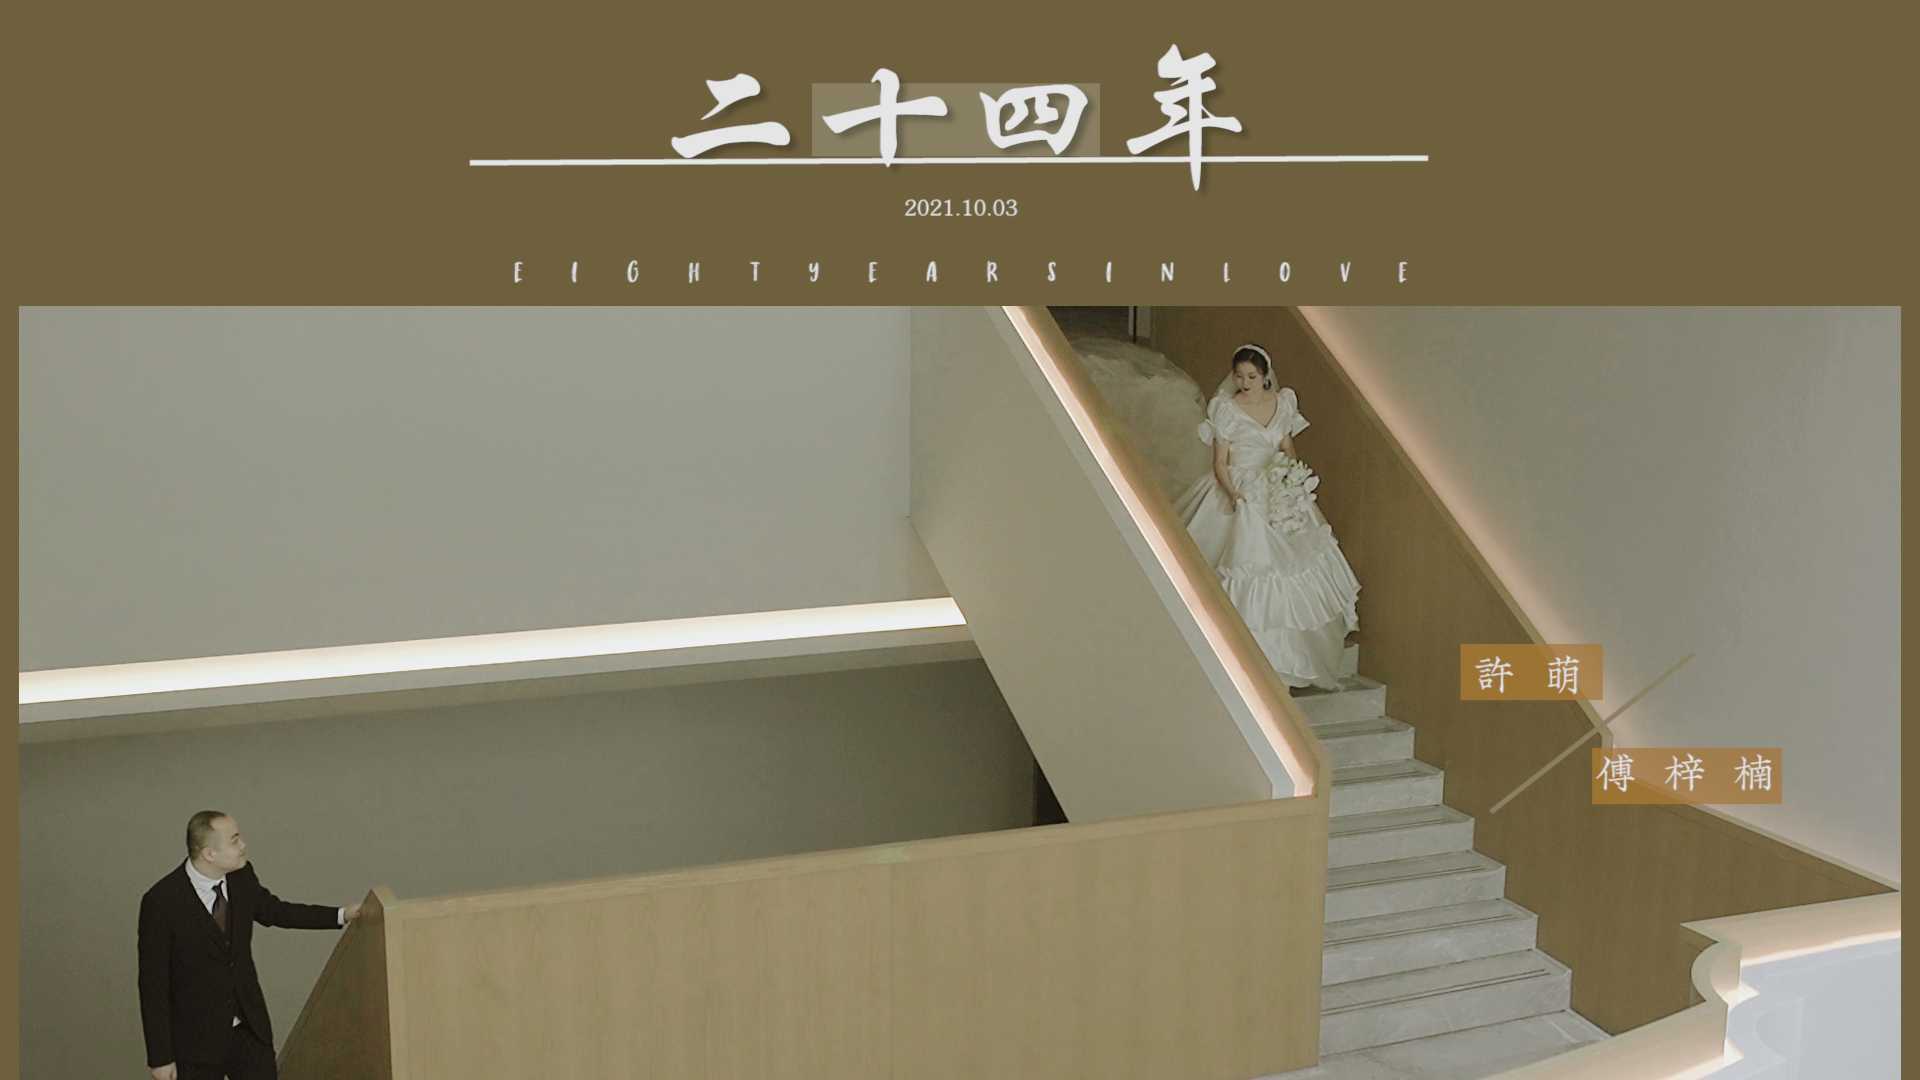 《二十四年》 铂尔曼酒店室内婚礼集锦